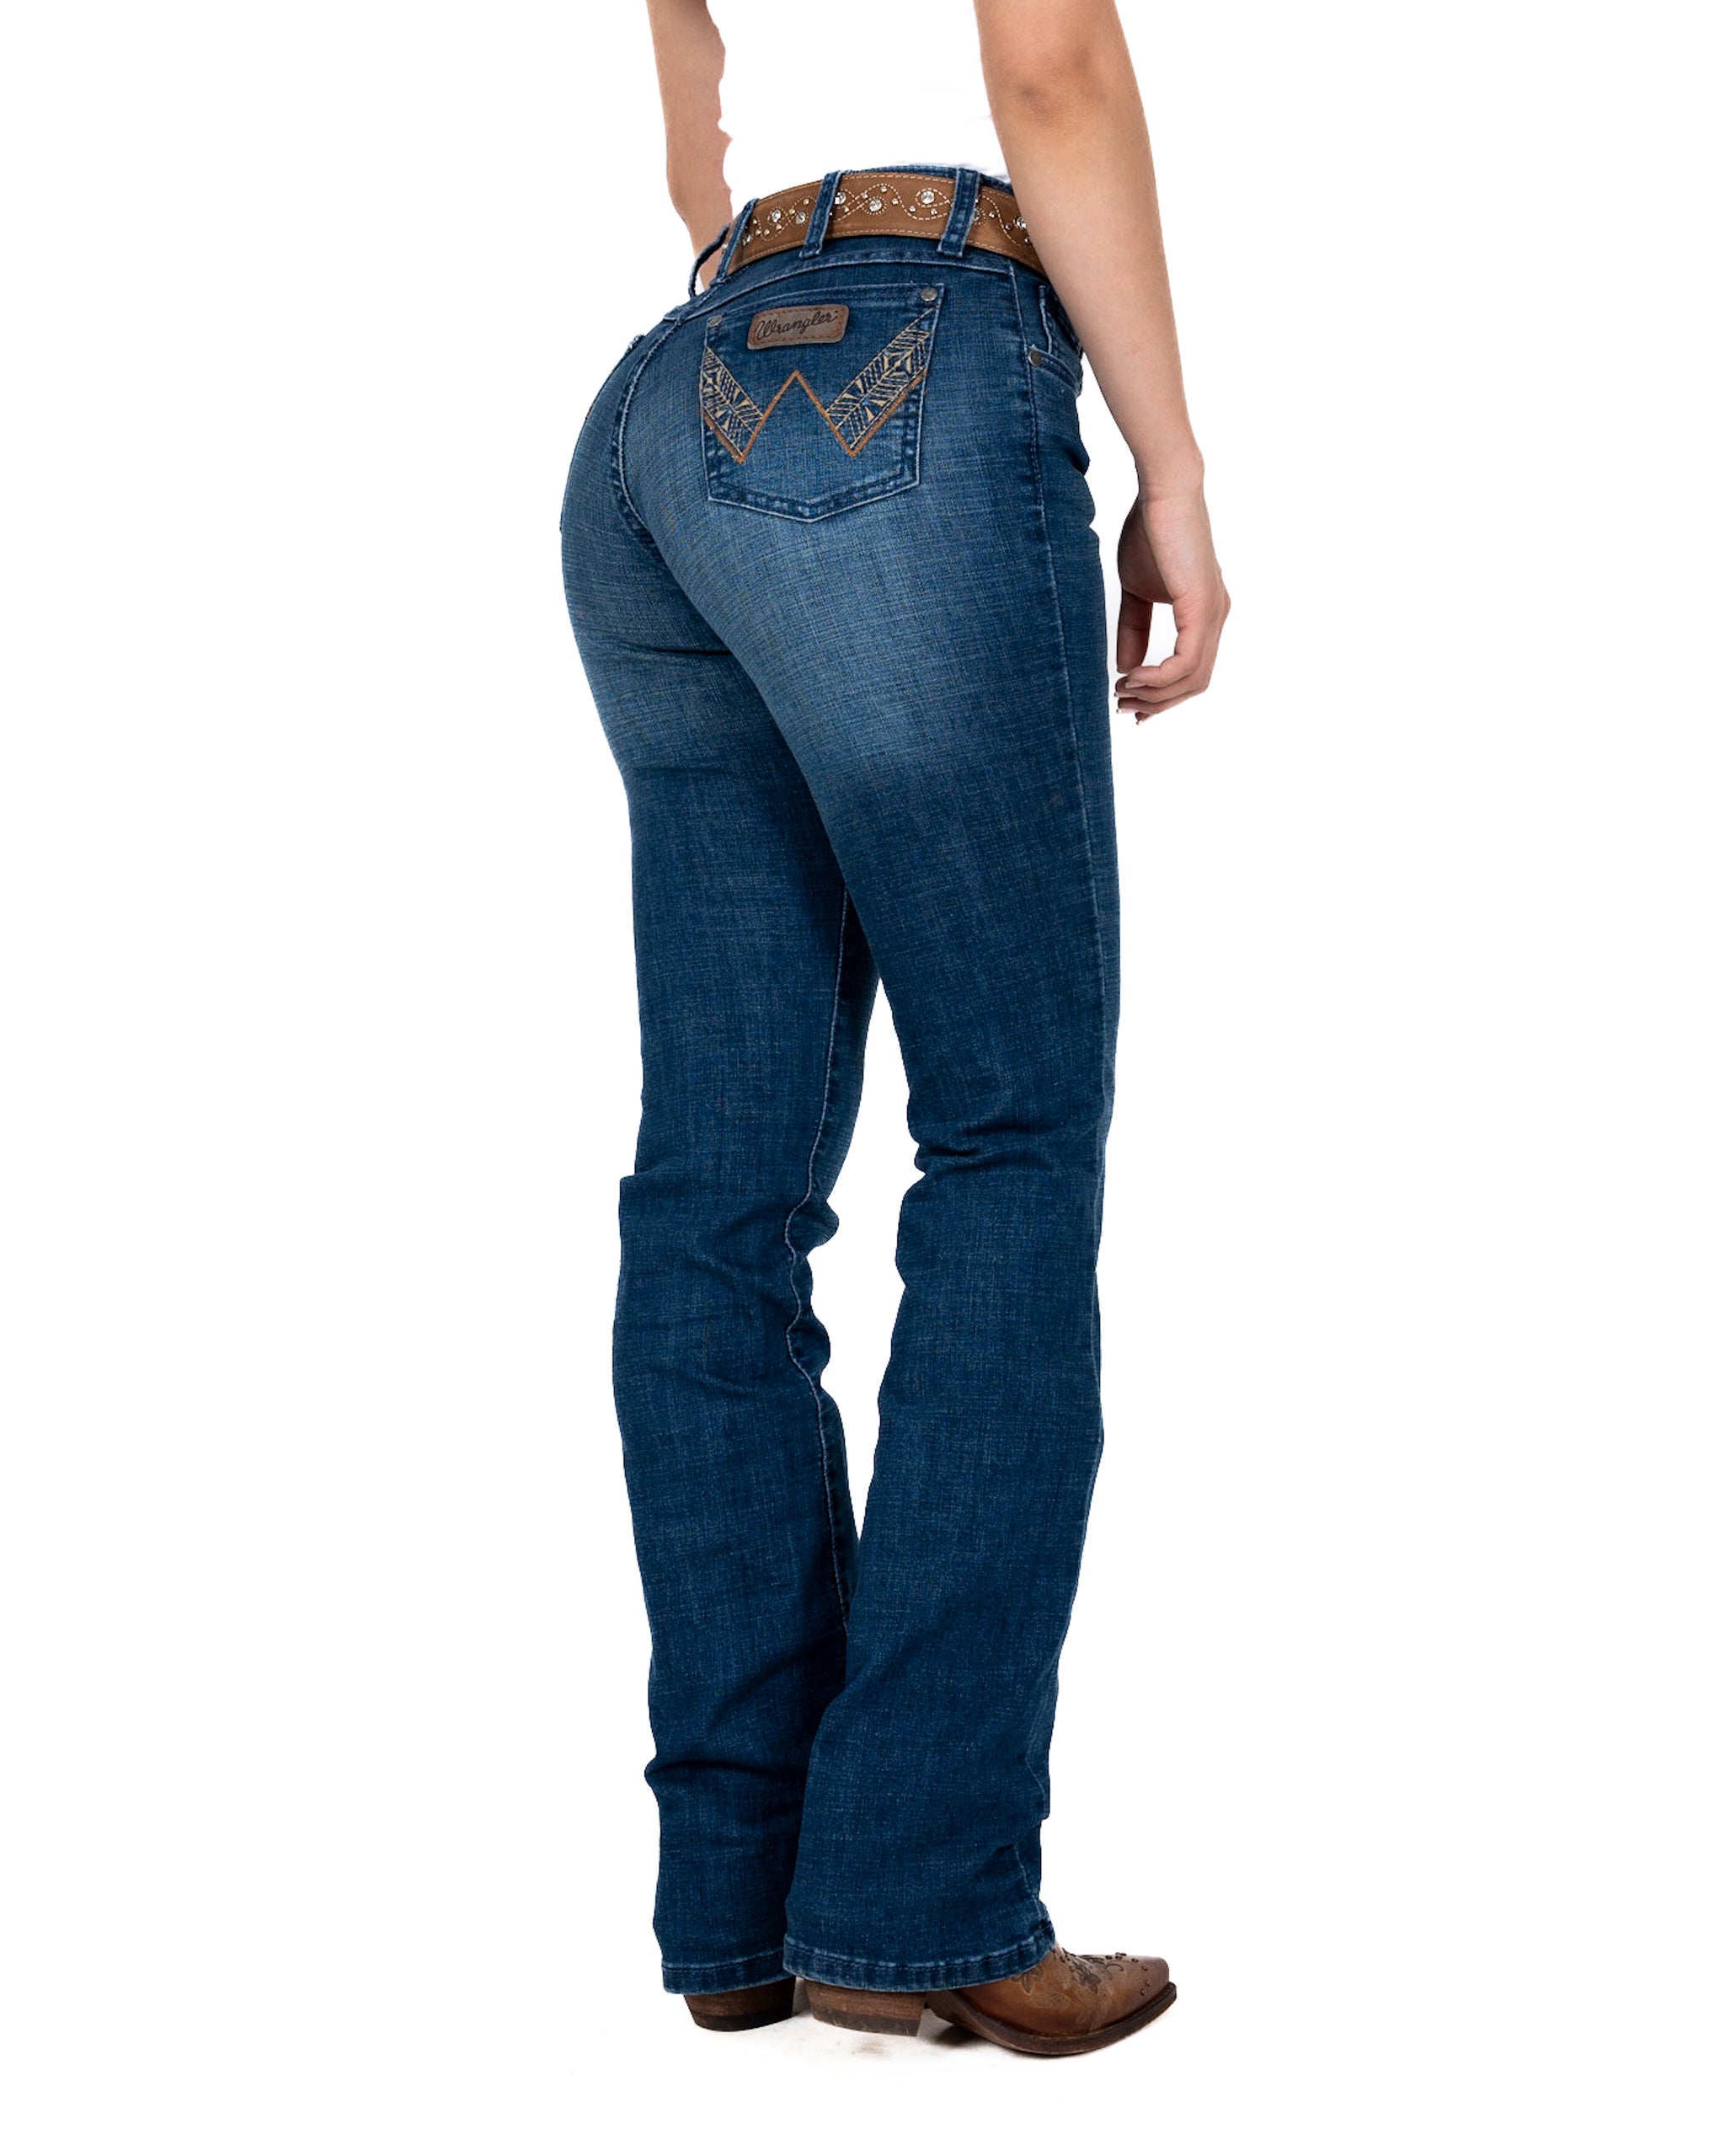 Jeans Wrangler Cintura Alta Dama